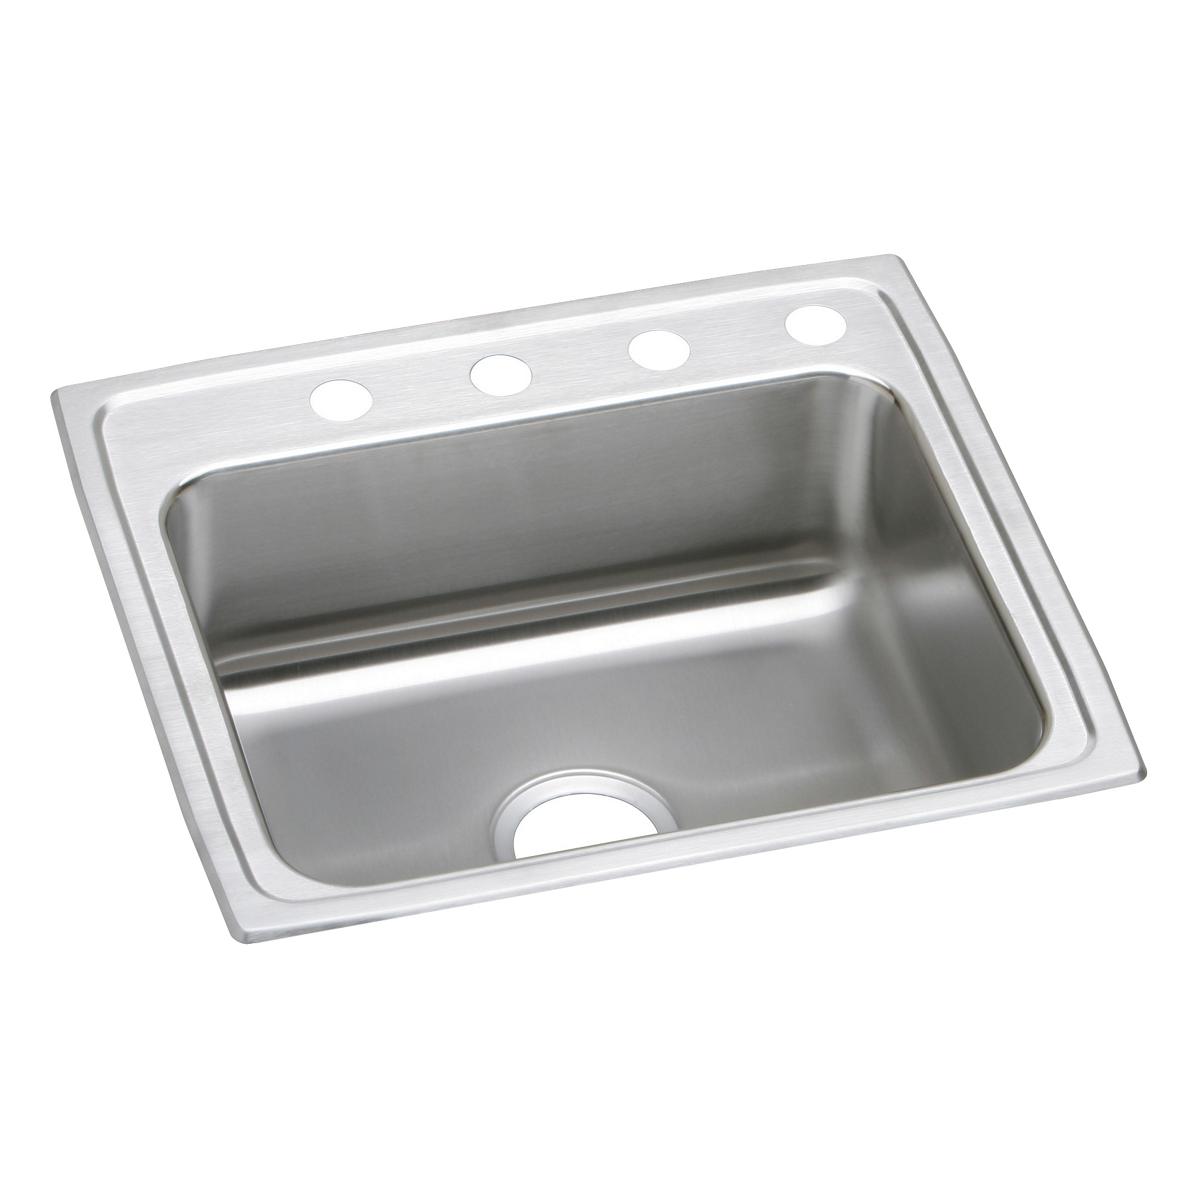 Elkay Stainless Steel Single Bowl Drop-in Sink 1268271